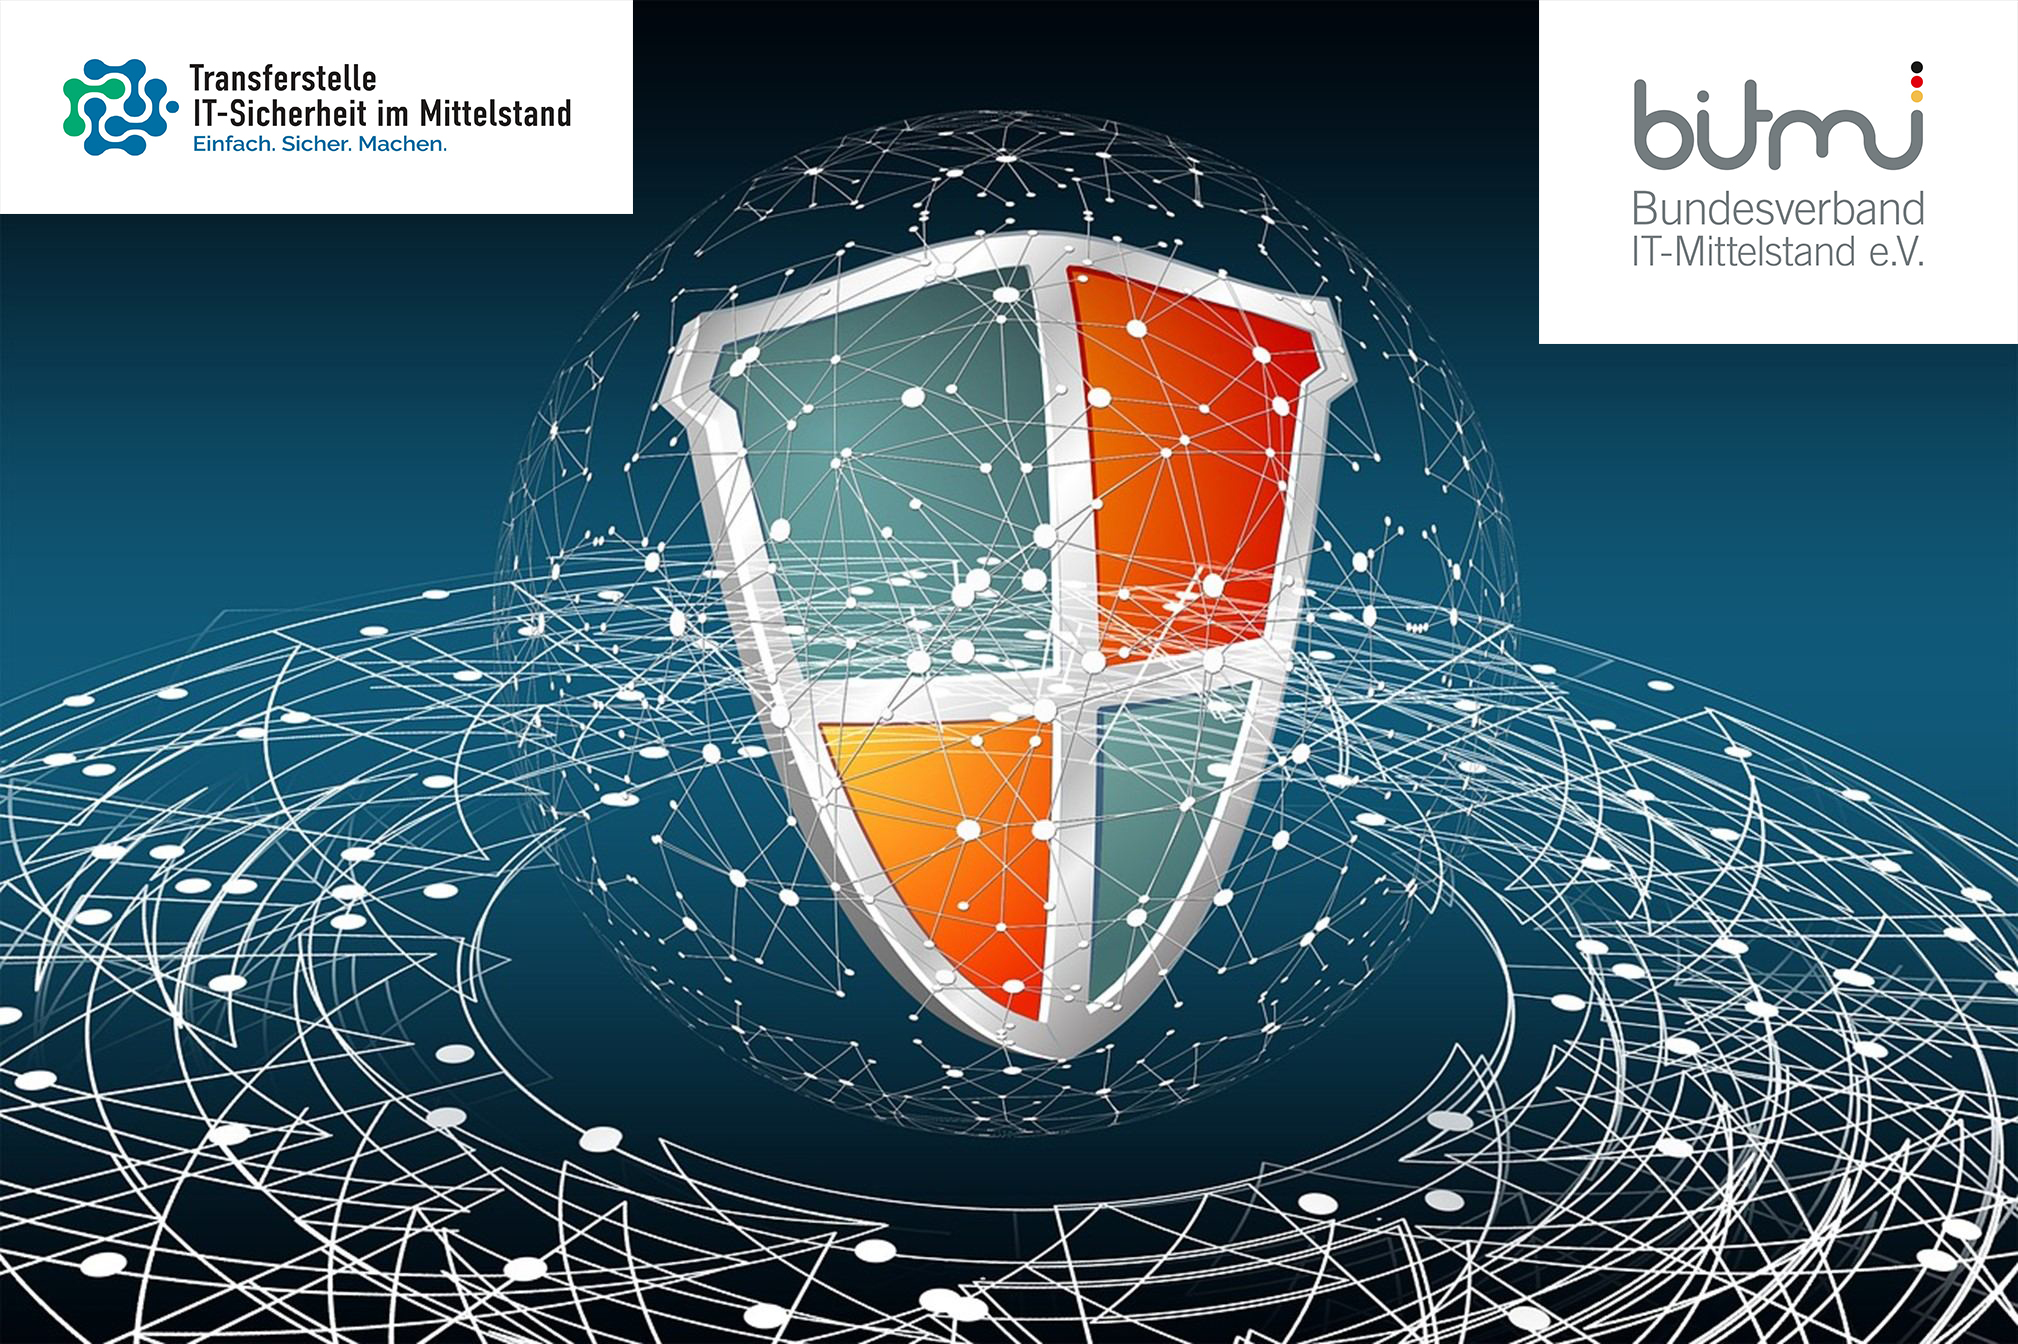 BITMi Mitglieder movetech IT-Solutions und exali bieten Webinar: Fight Cybercrime – effektive Security-Strategien für den IT-Mittelstand